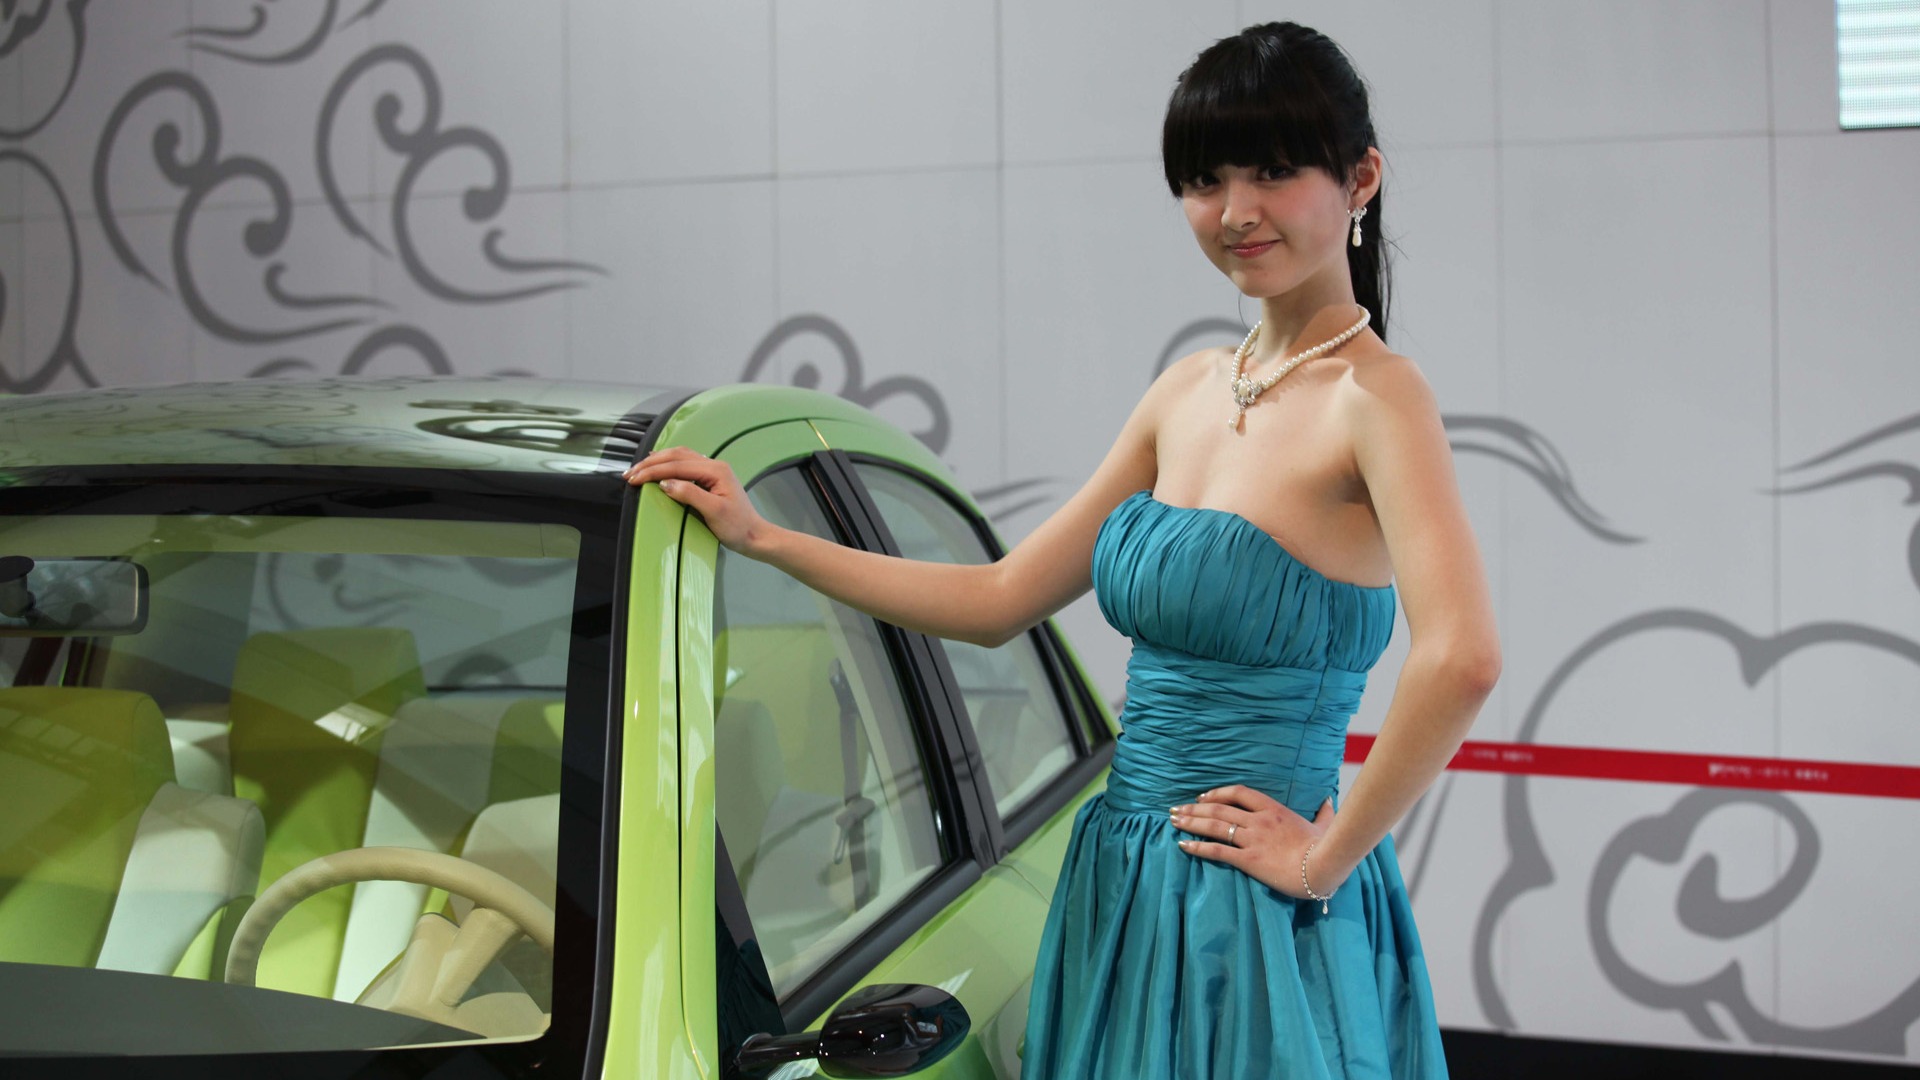 2010 v Pekingu Mezinárodním autosalonu krása (1) (vítr honí mraky práce) #34 - 1920x1080